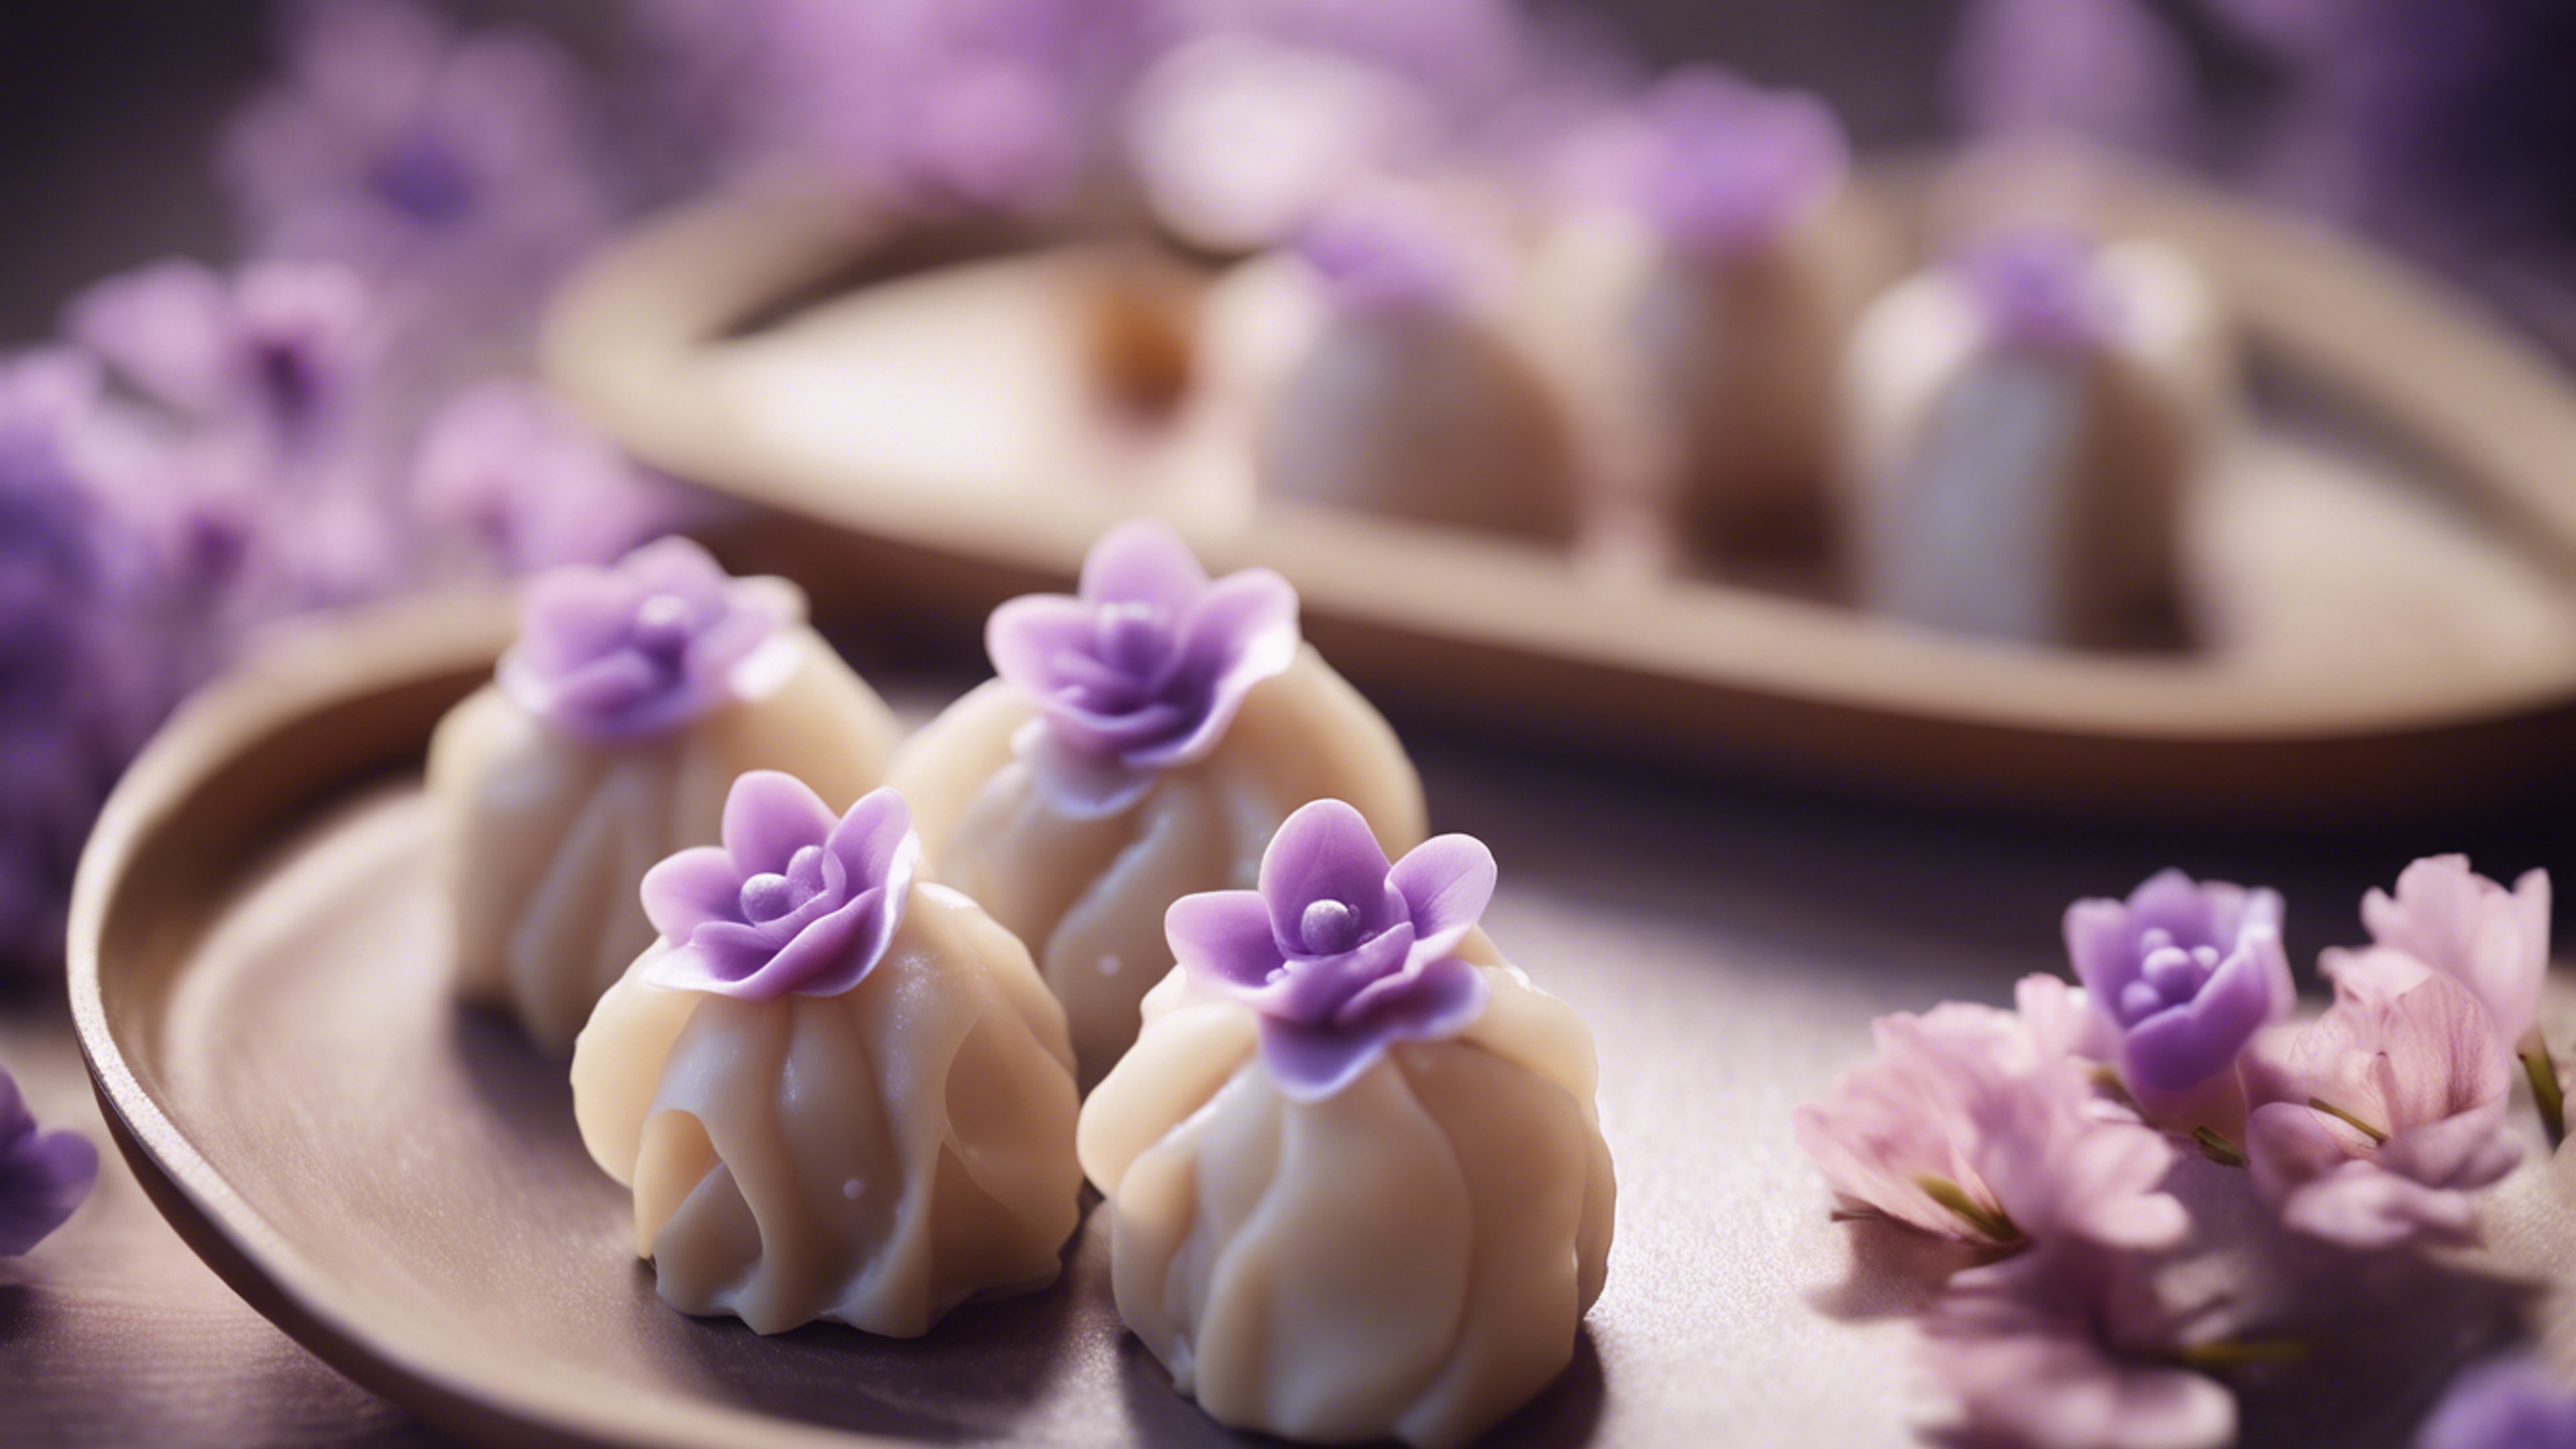 A kawaii styled dim sum dish, with delicate and light purple dumplings shaped like flowers. Обои[29e111c9b013403690b4]